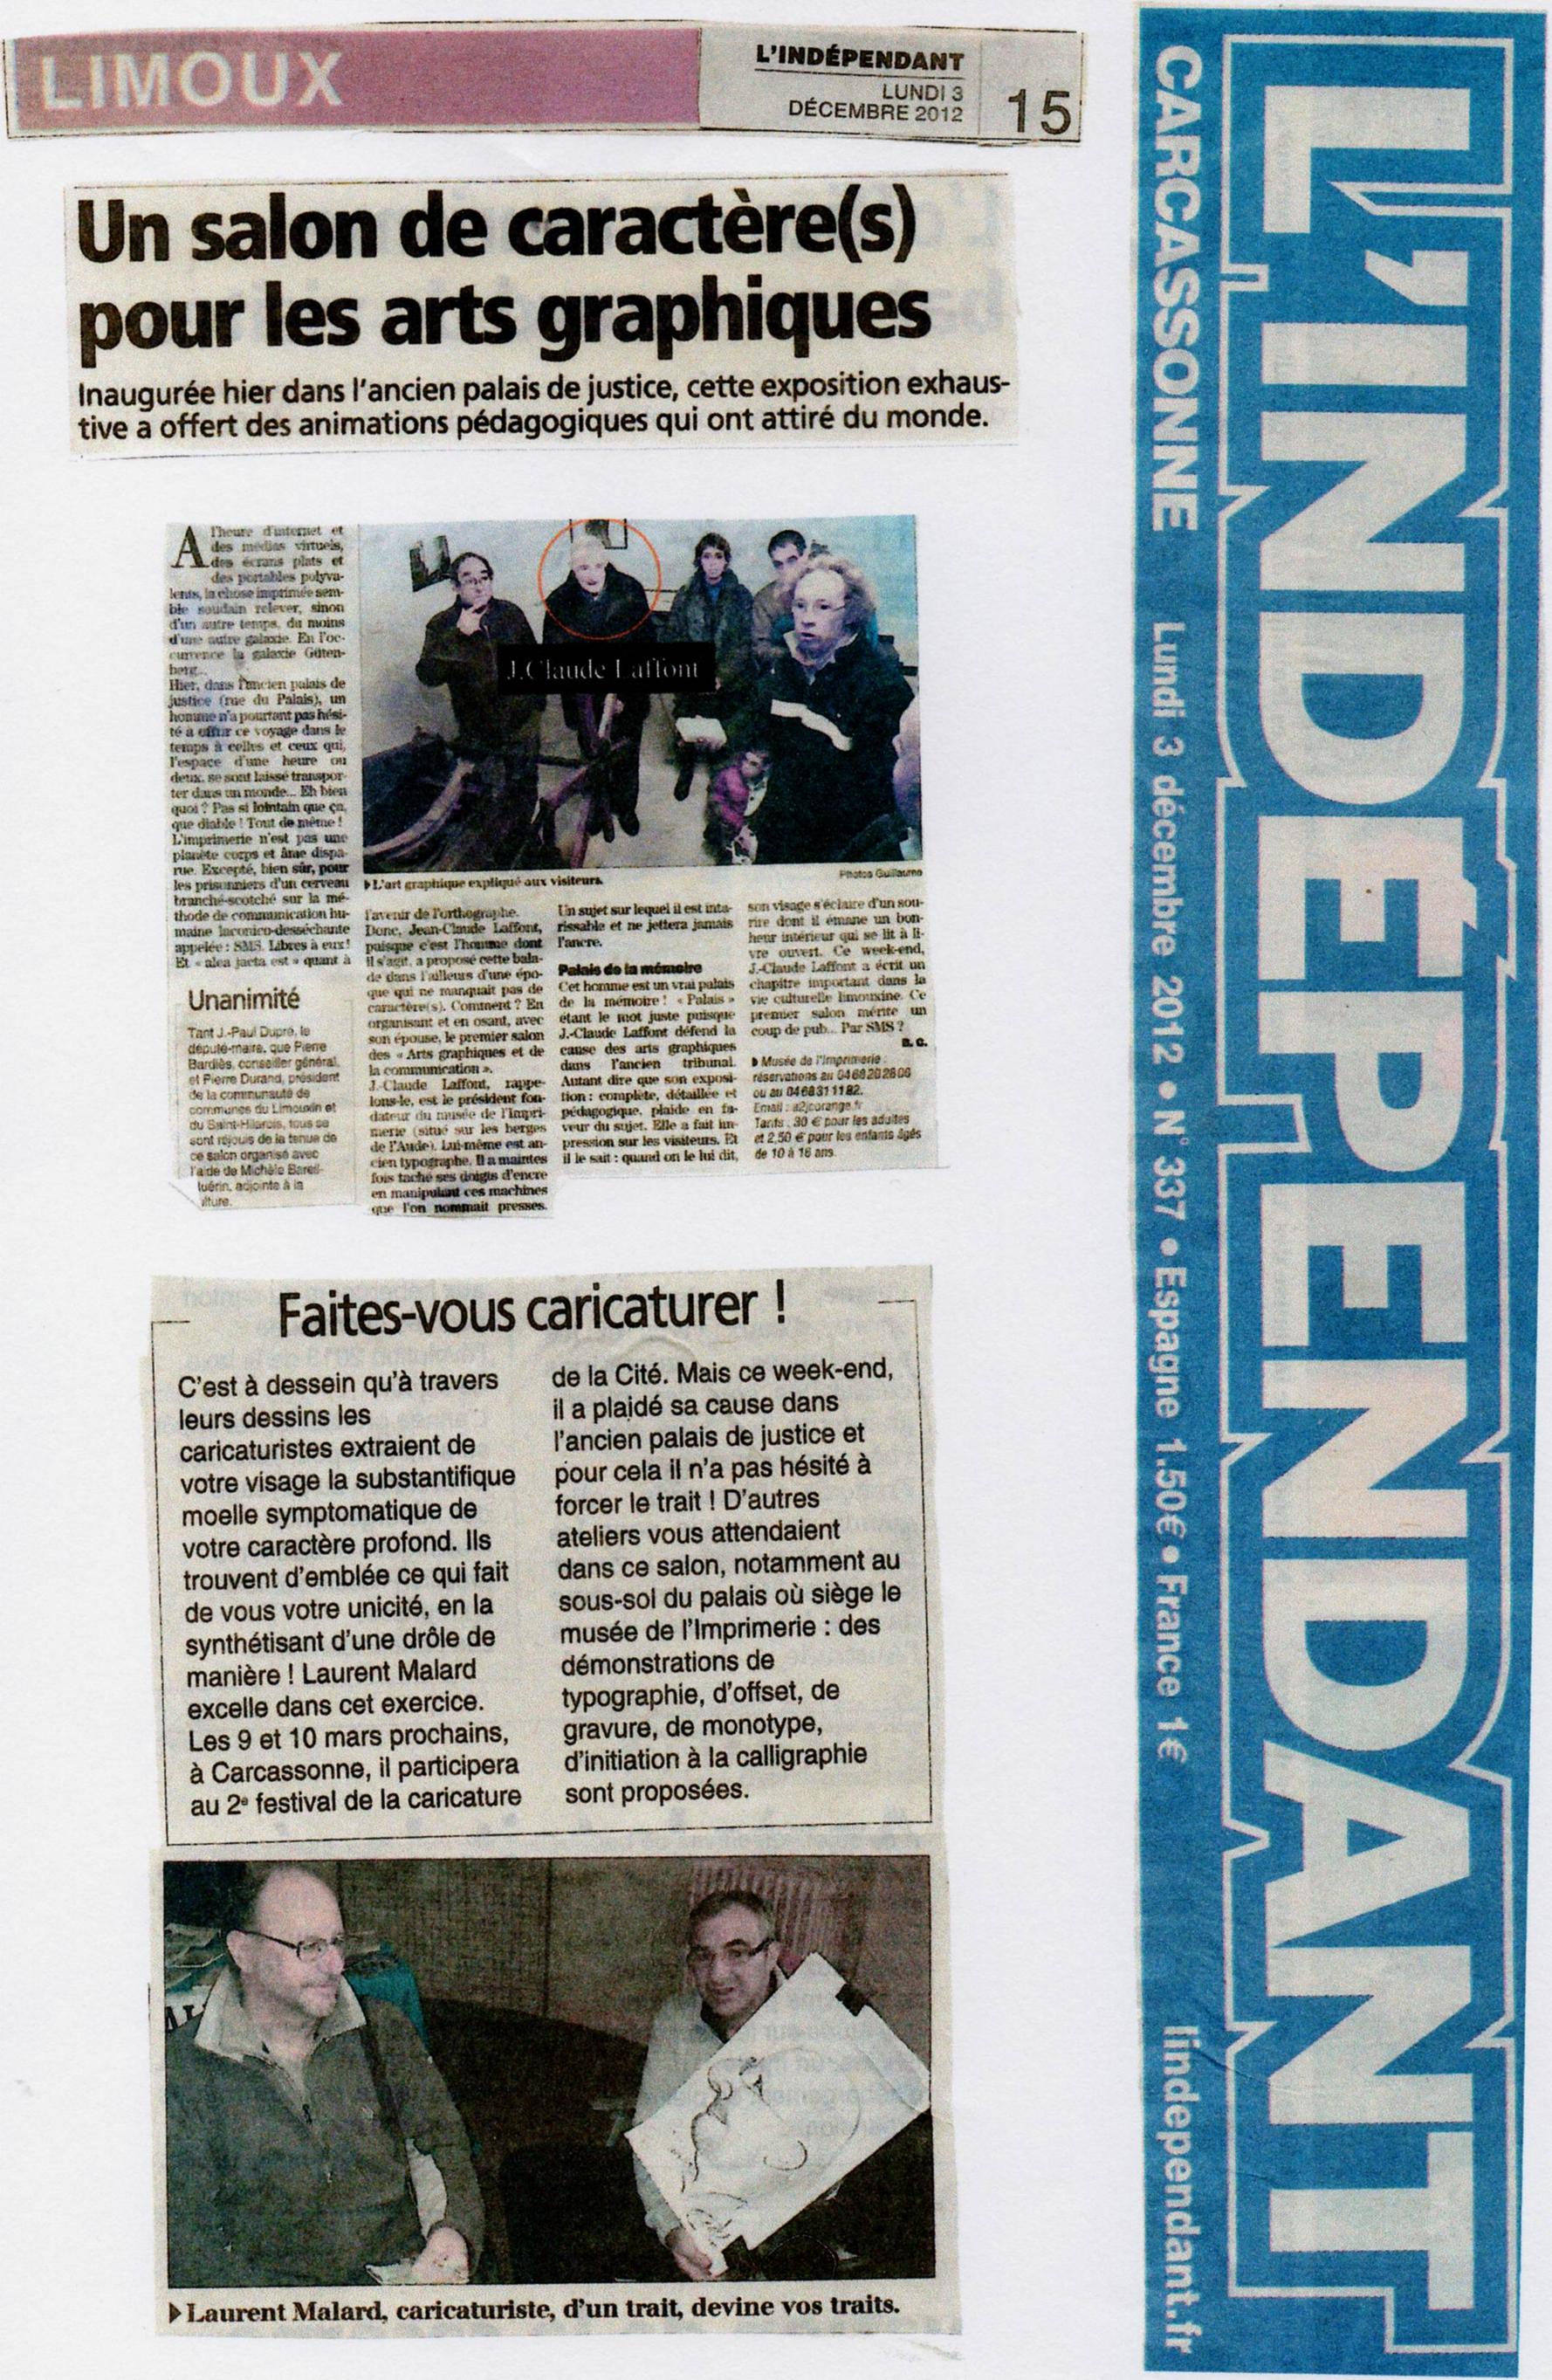 L'Indépendant, 2 décembre 2012
Limoux, Un salon de caractère(s) pour les arts graphiques.